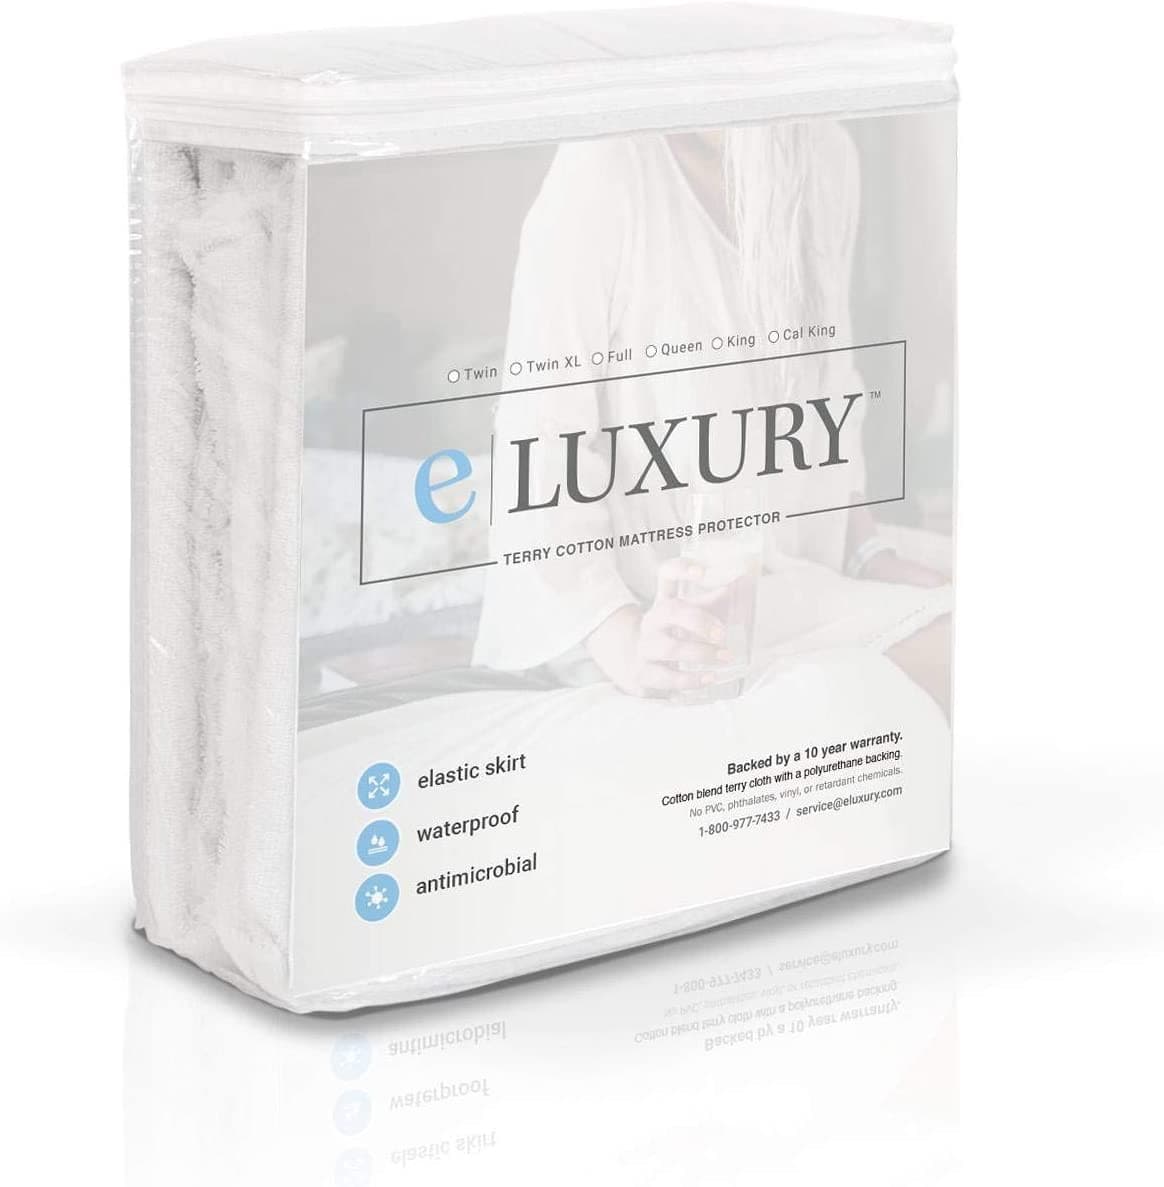 https://mattressstoreslosangeles.com/cdn/shop/products/Terry-cloth-mattress-protector-e-luxury.jpg?v=1689172255&width=1445